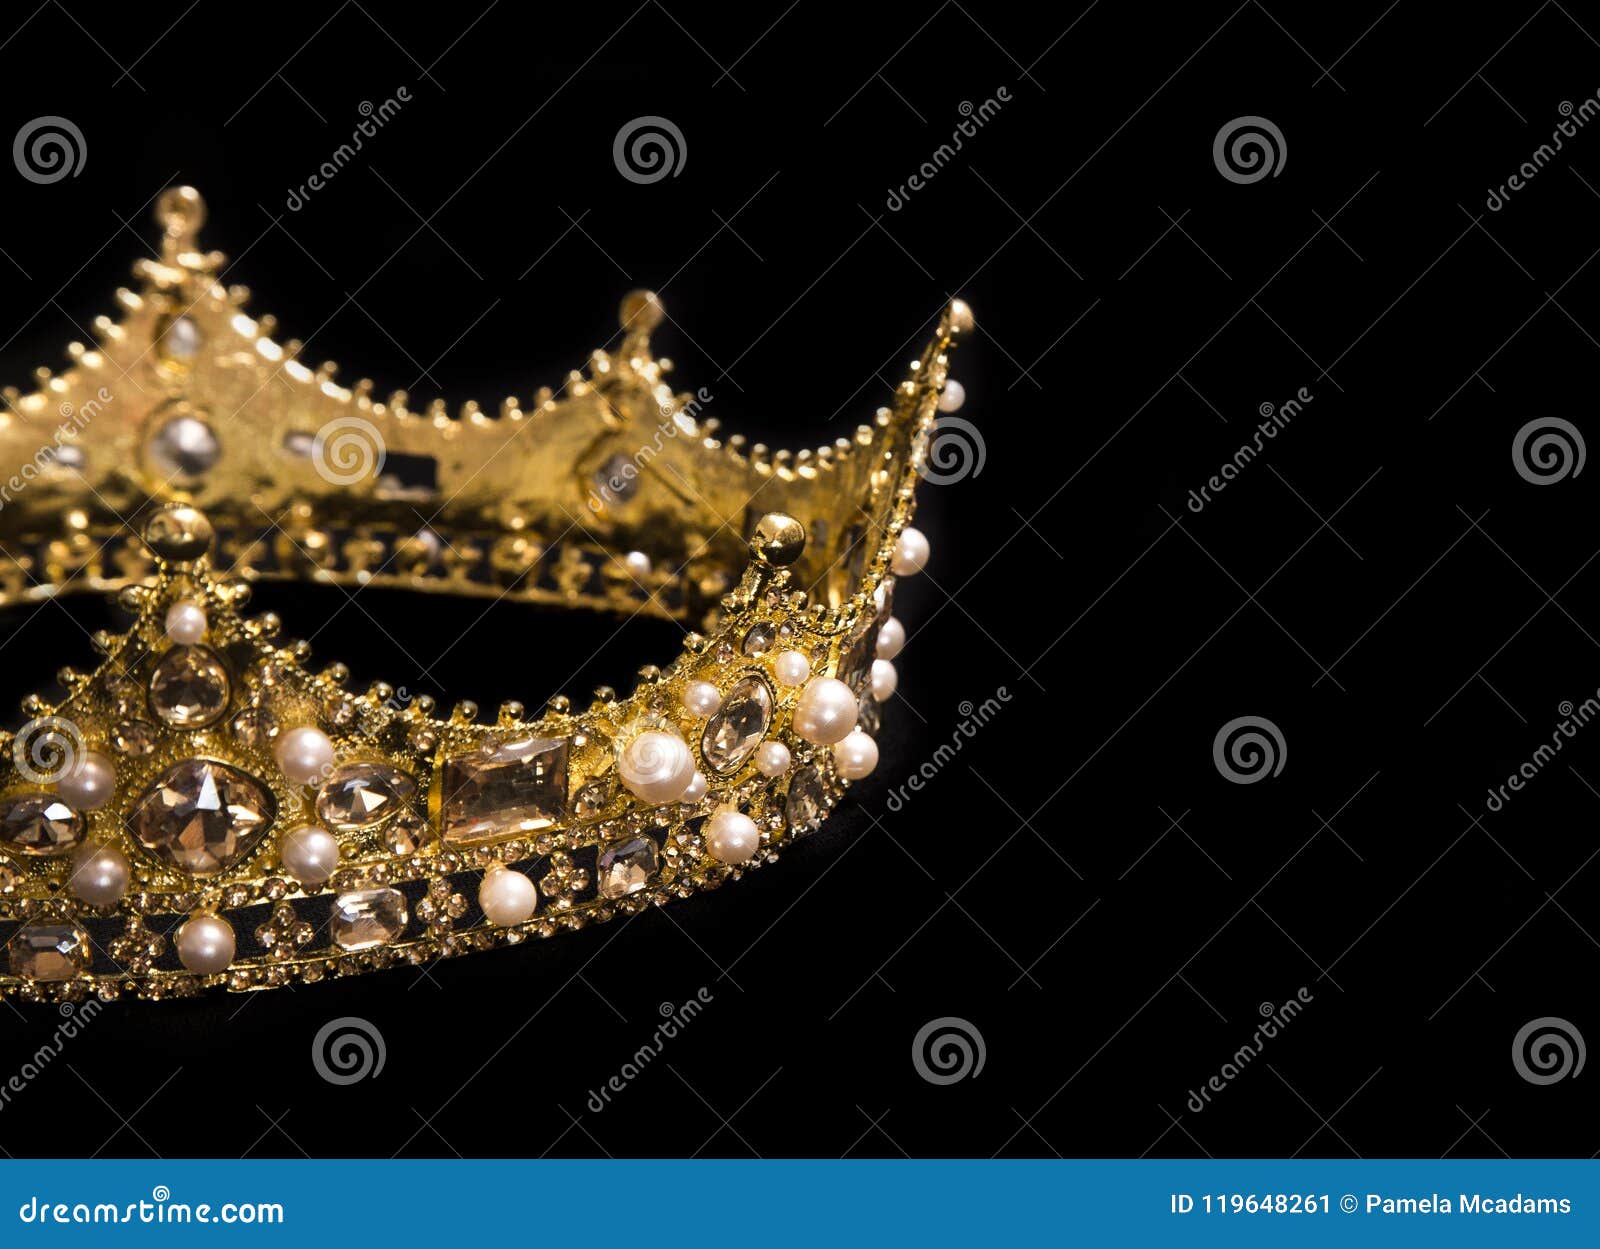 Un Roi Ou Une Couronne De La Reine Image stock - Image du copie